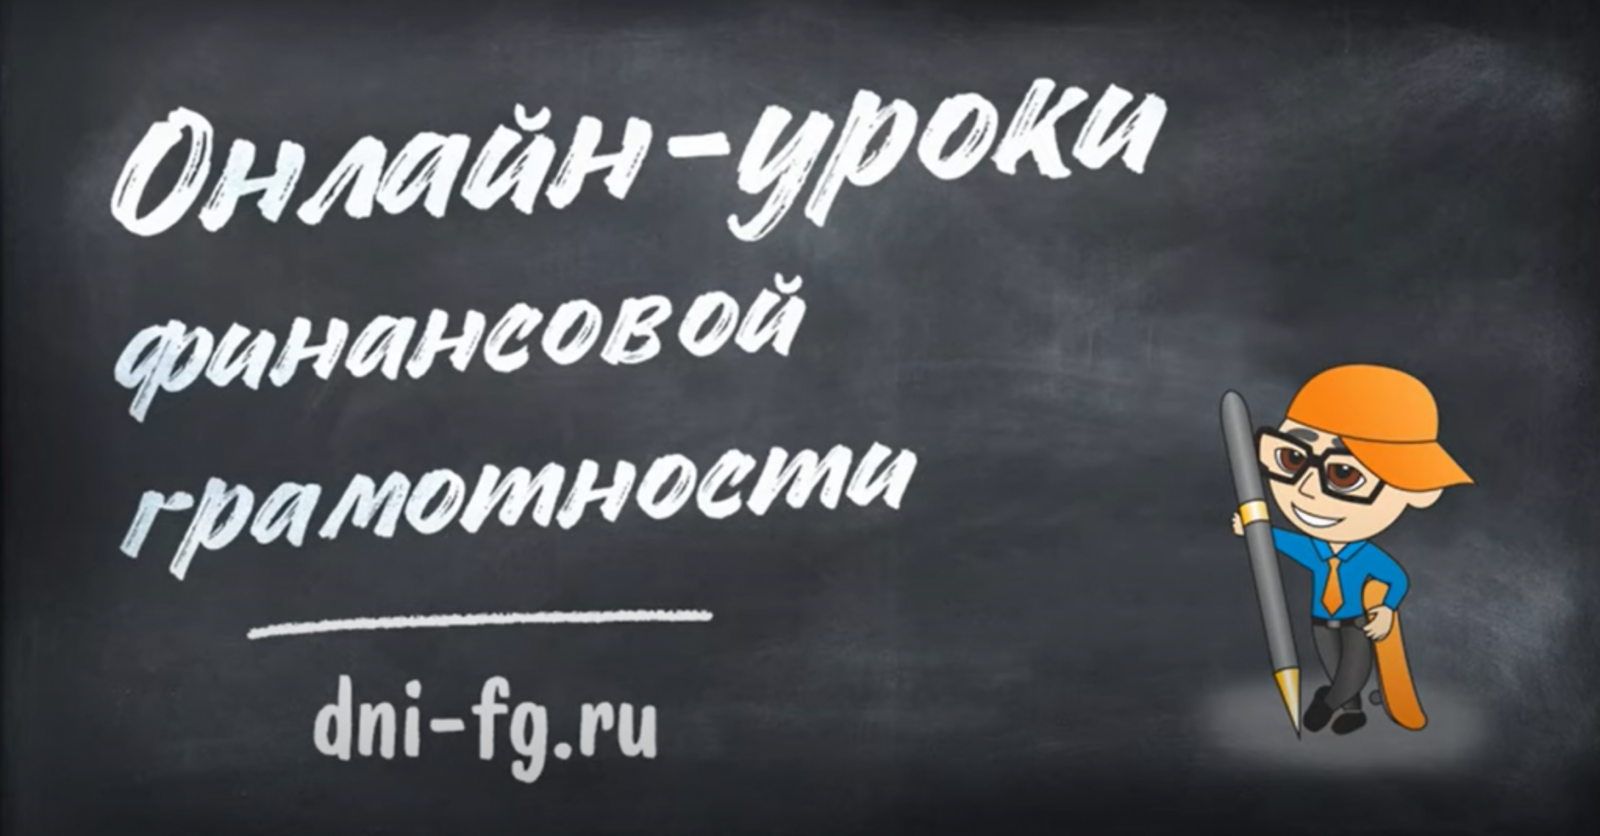 Стартовала серия онлайн-уроков финансовой грамотности Банка России для школьников и студентов